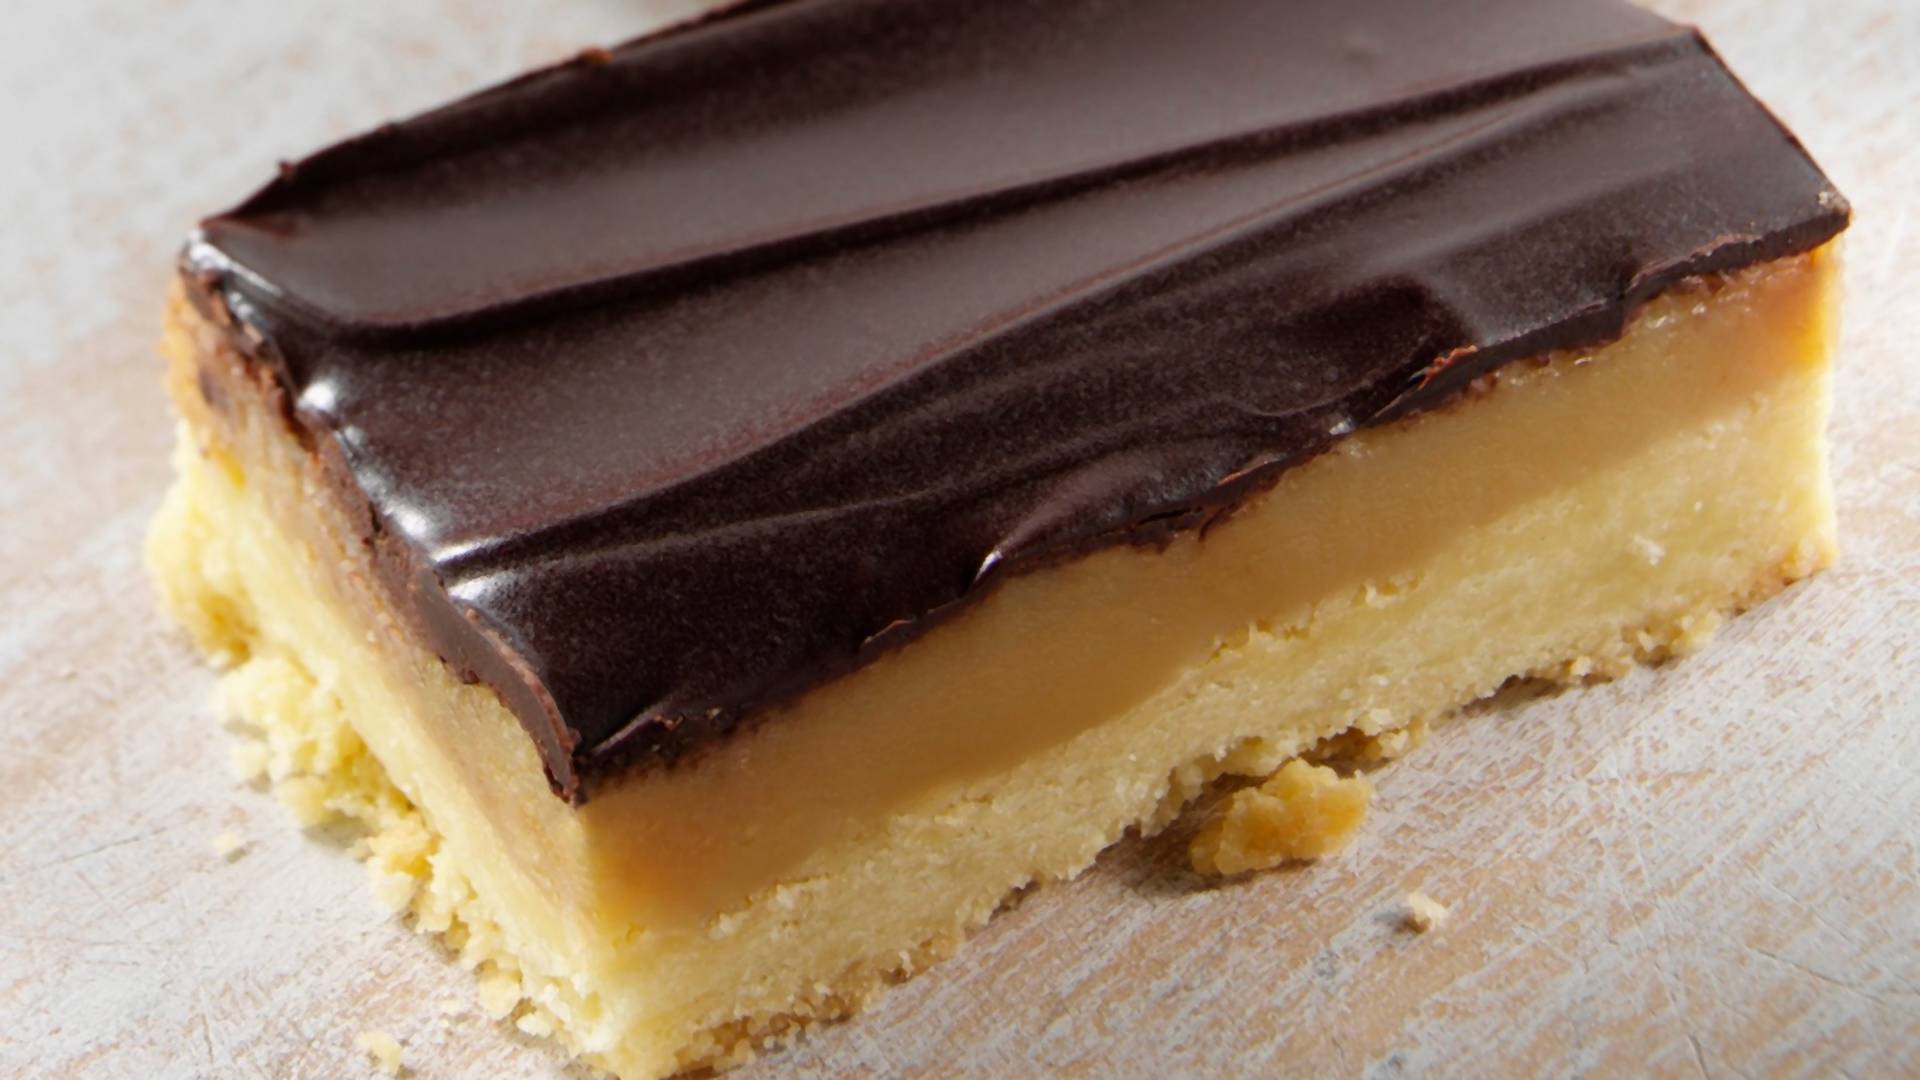 Milionerov kolač je sa pravom dobio ime - bogat ukus karamele i čokolade će vas očarati